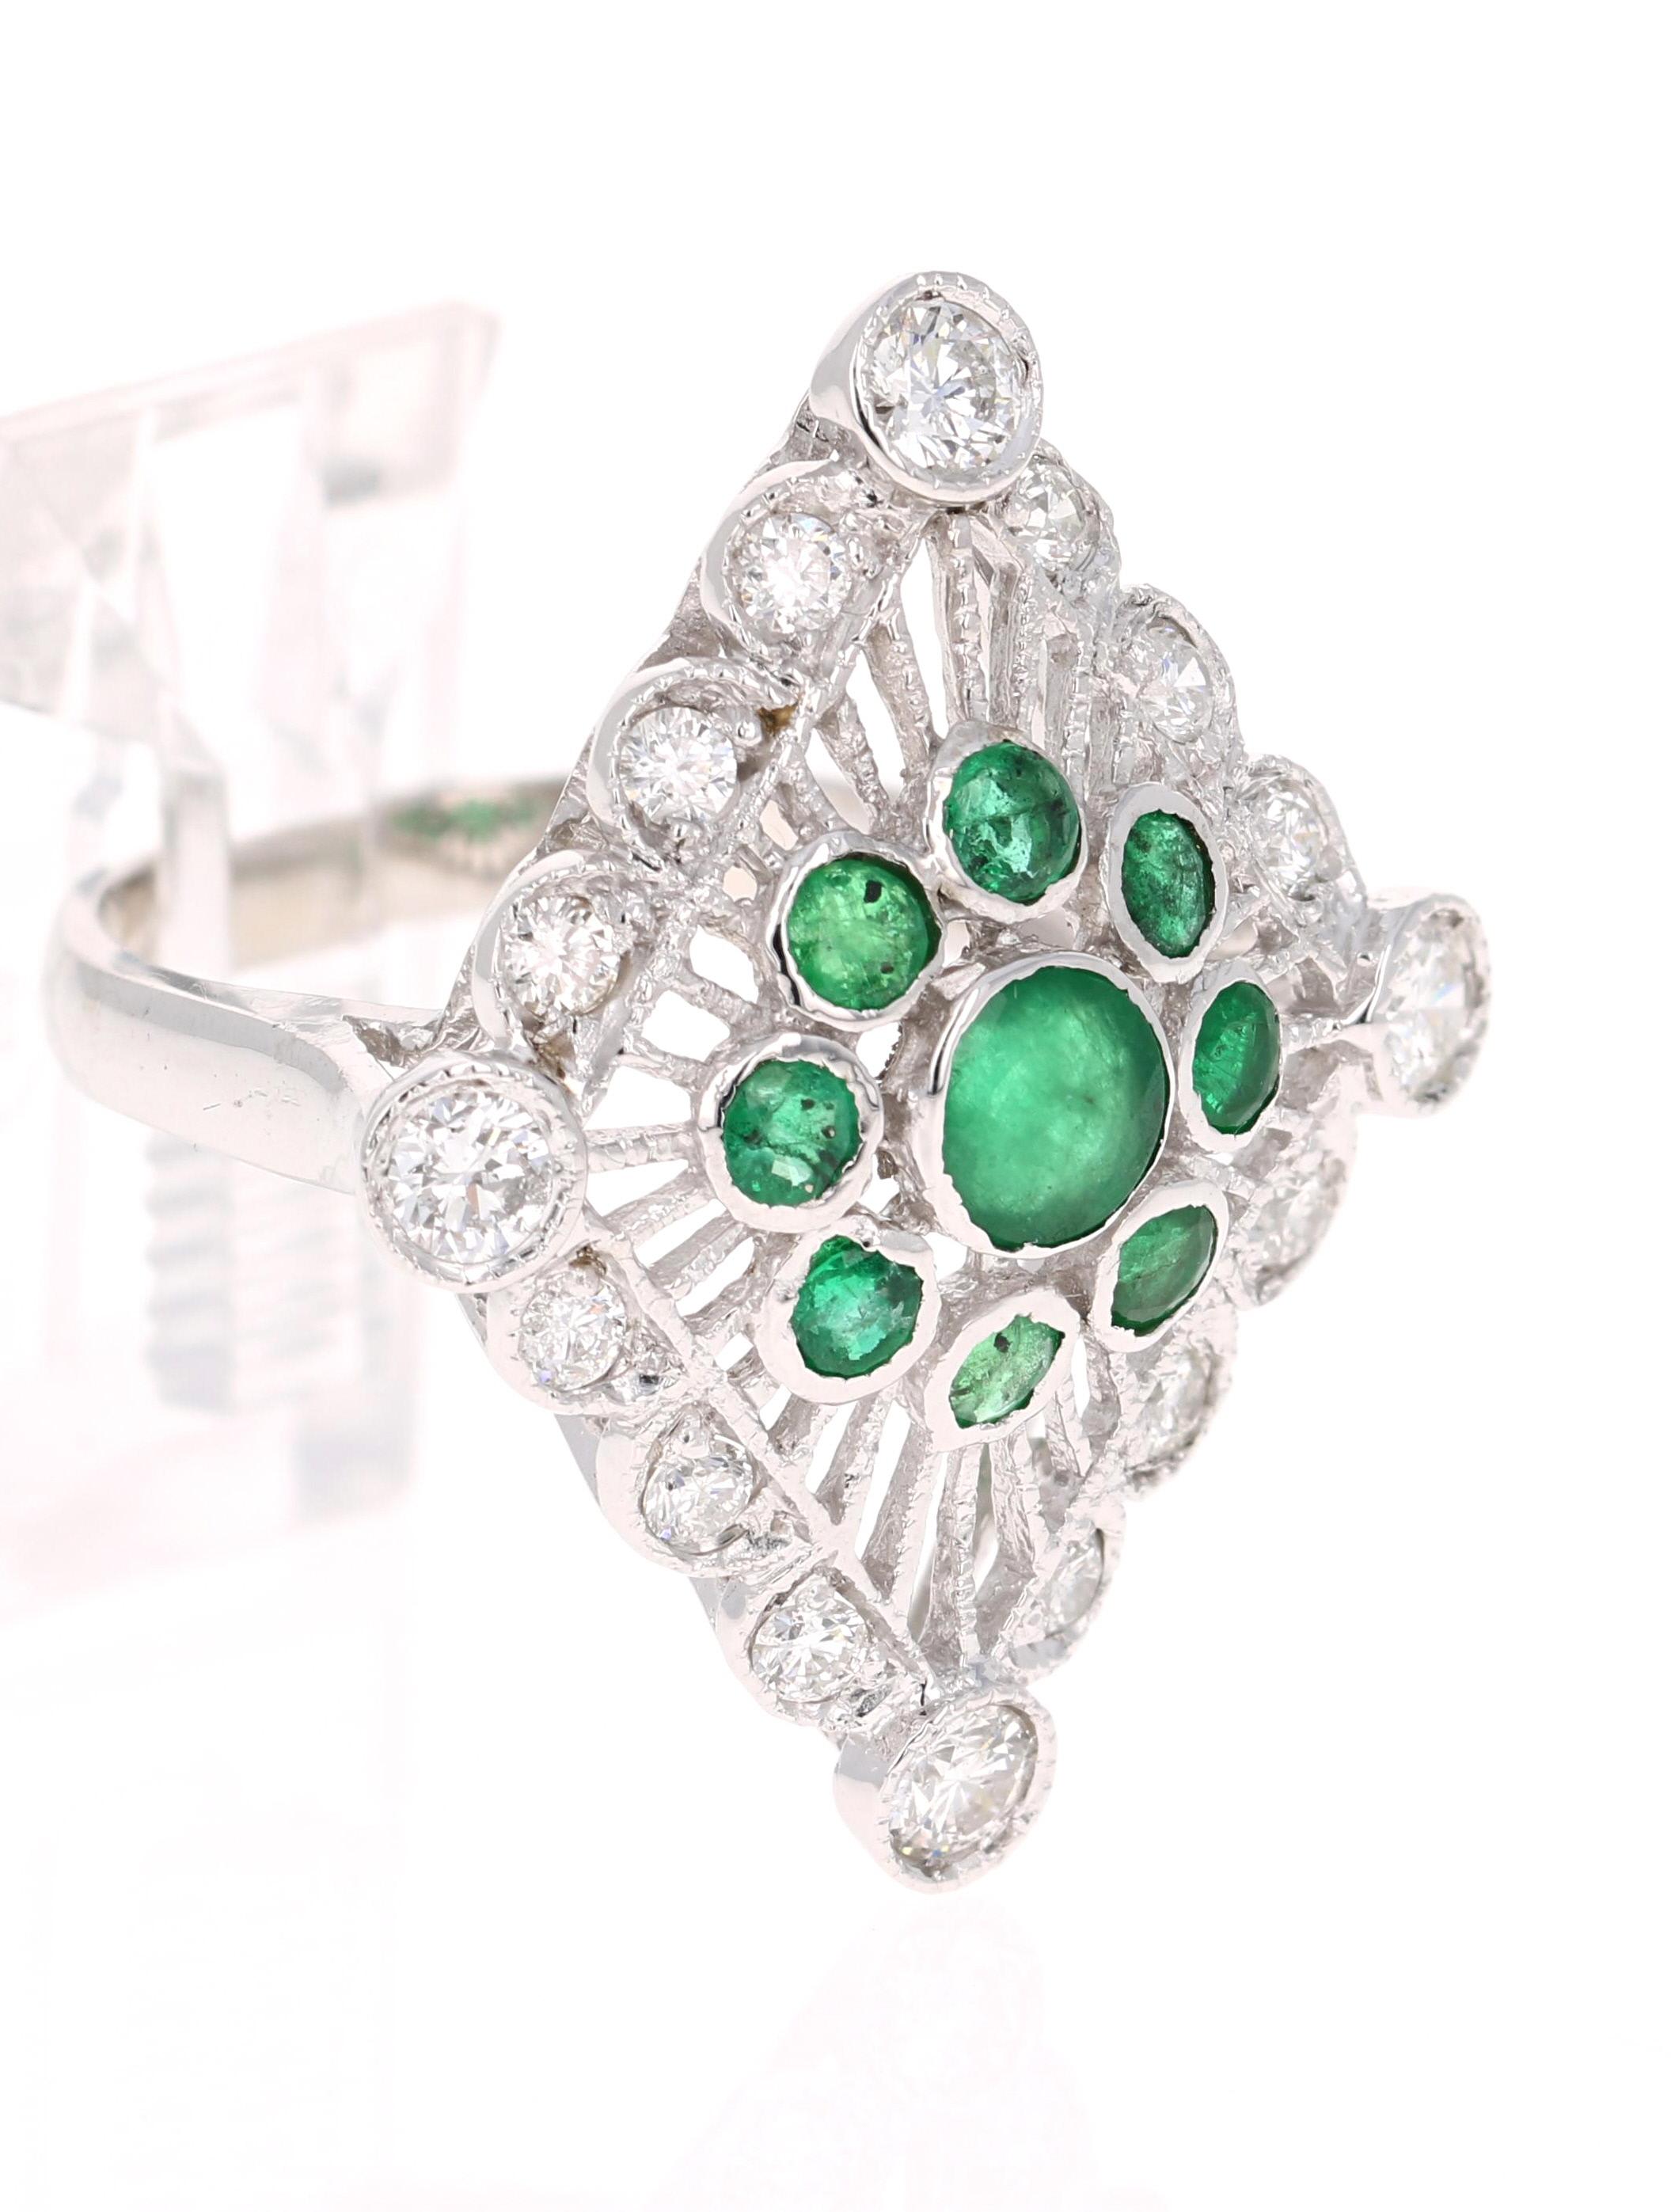 Der einzigartigste Ring von allen! Ein schillernder Cluster aus Smaragden und Diamanten, der elegant um Ihren Finger gewickelt ist...

Es gibt 9 Smaragde im Rundschliff mit einem Gewicht von 1,16 Karat und 16 Diamanten im Rundschliff mit einem